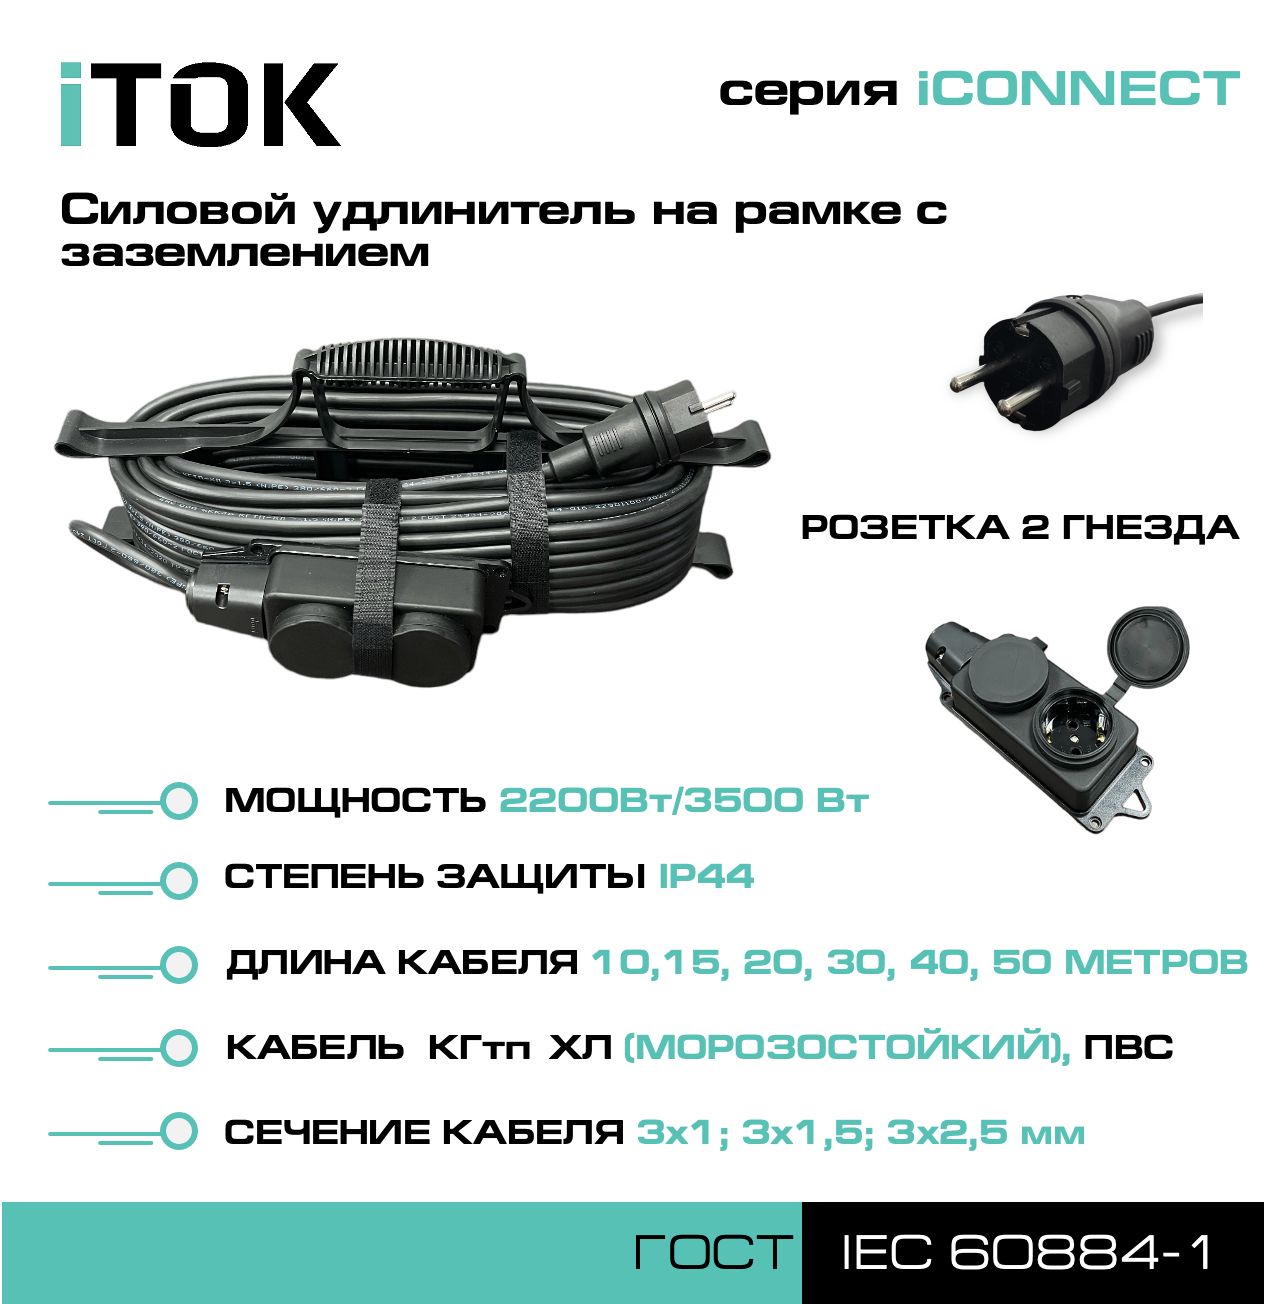 Удлинитель на рамке с заземлением серии iTOK iCONNECT КГтп-ХЛ 3х1,5 мм 2 гнезда IP44 20 м